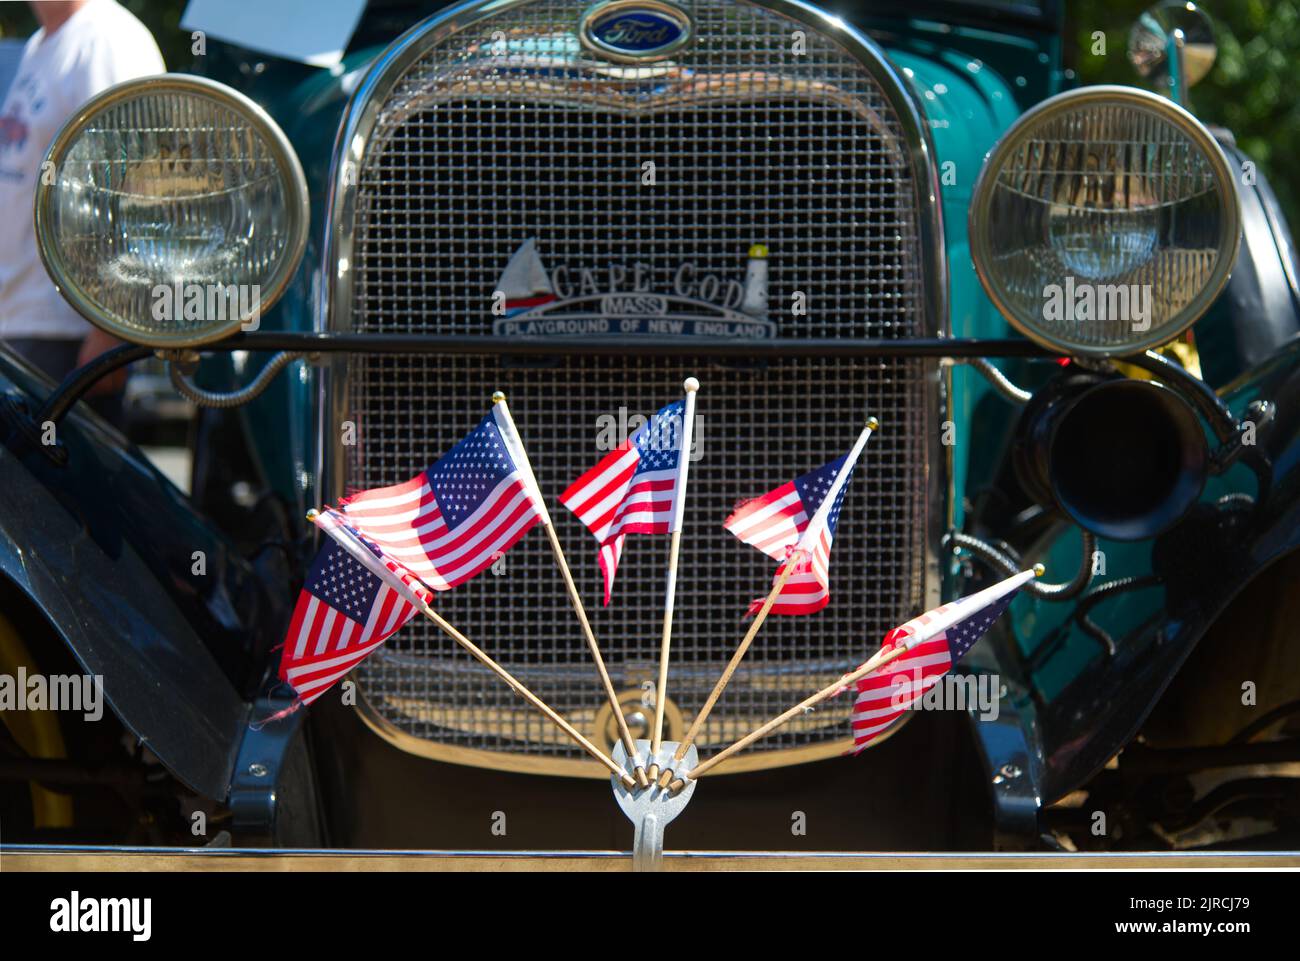 US-Flaggen fliegen auf dem vorderen Stoßfänger einer restaurierten antiken Ford in einer antiken Auto-Parade in Dennis, Massachusetts, Cape Cod, USA Stockfoto